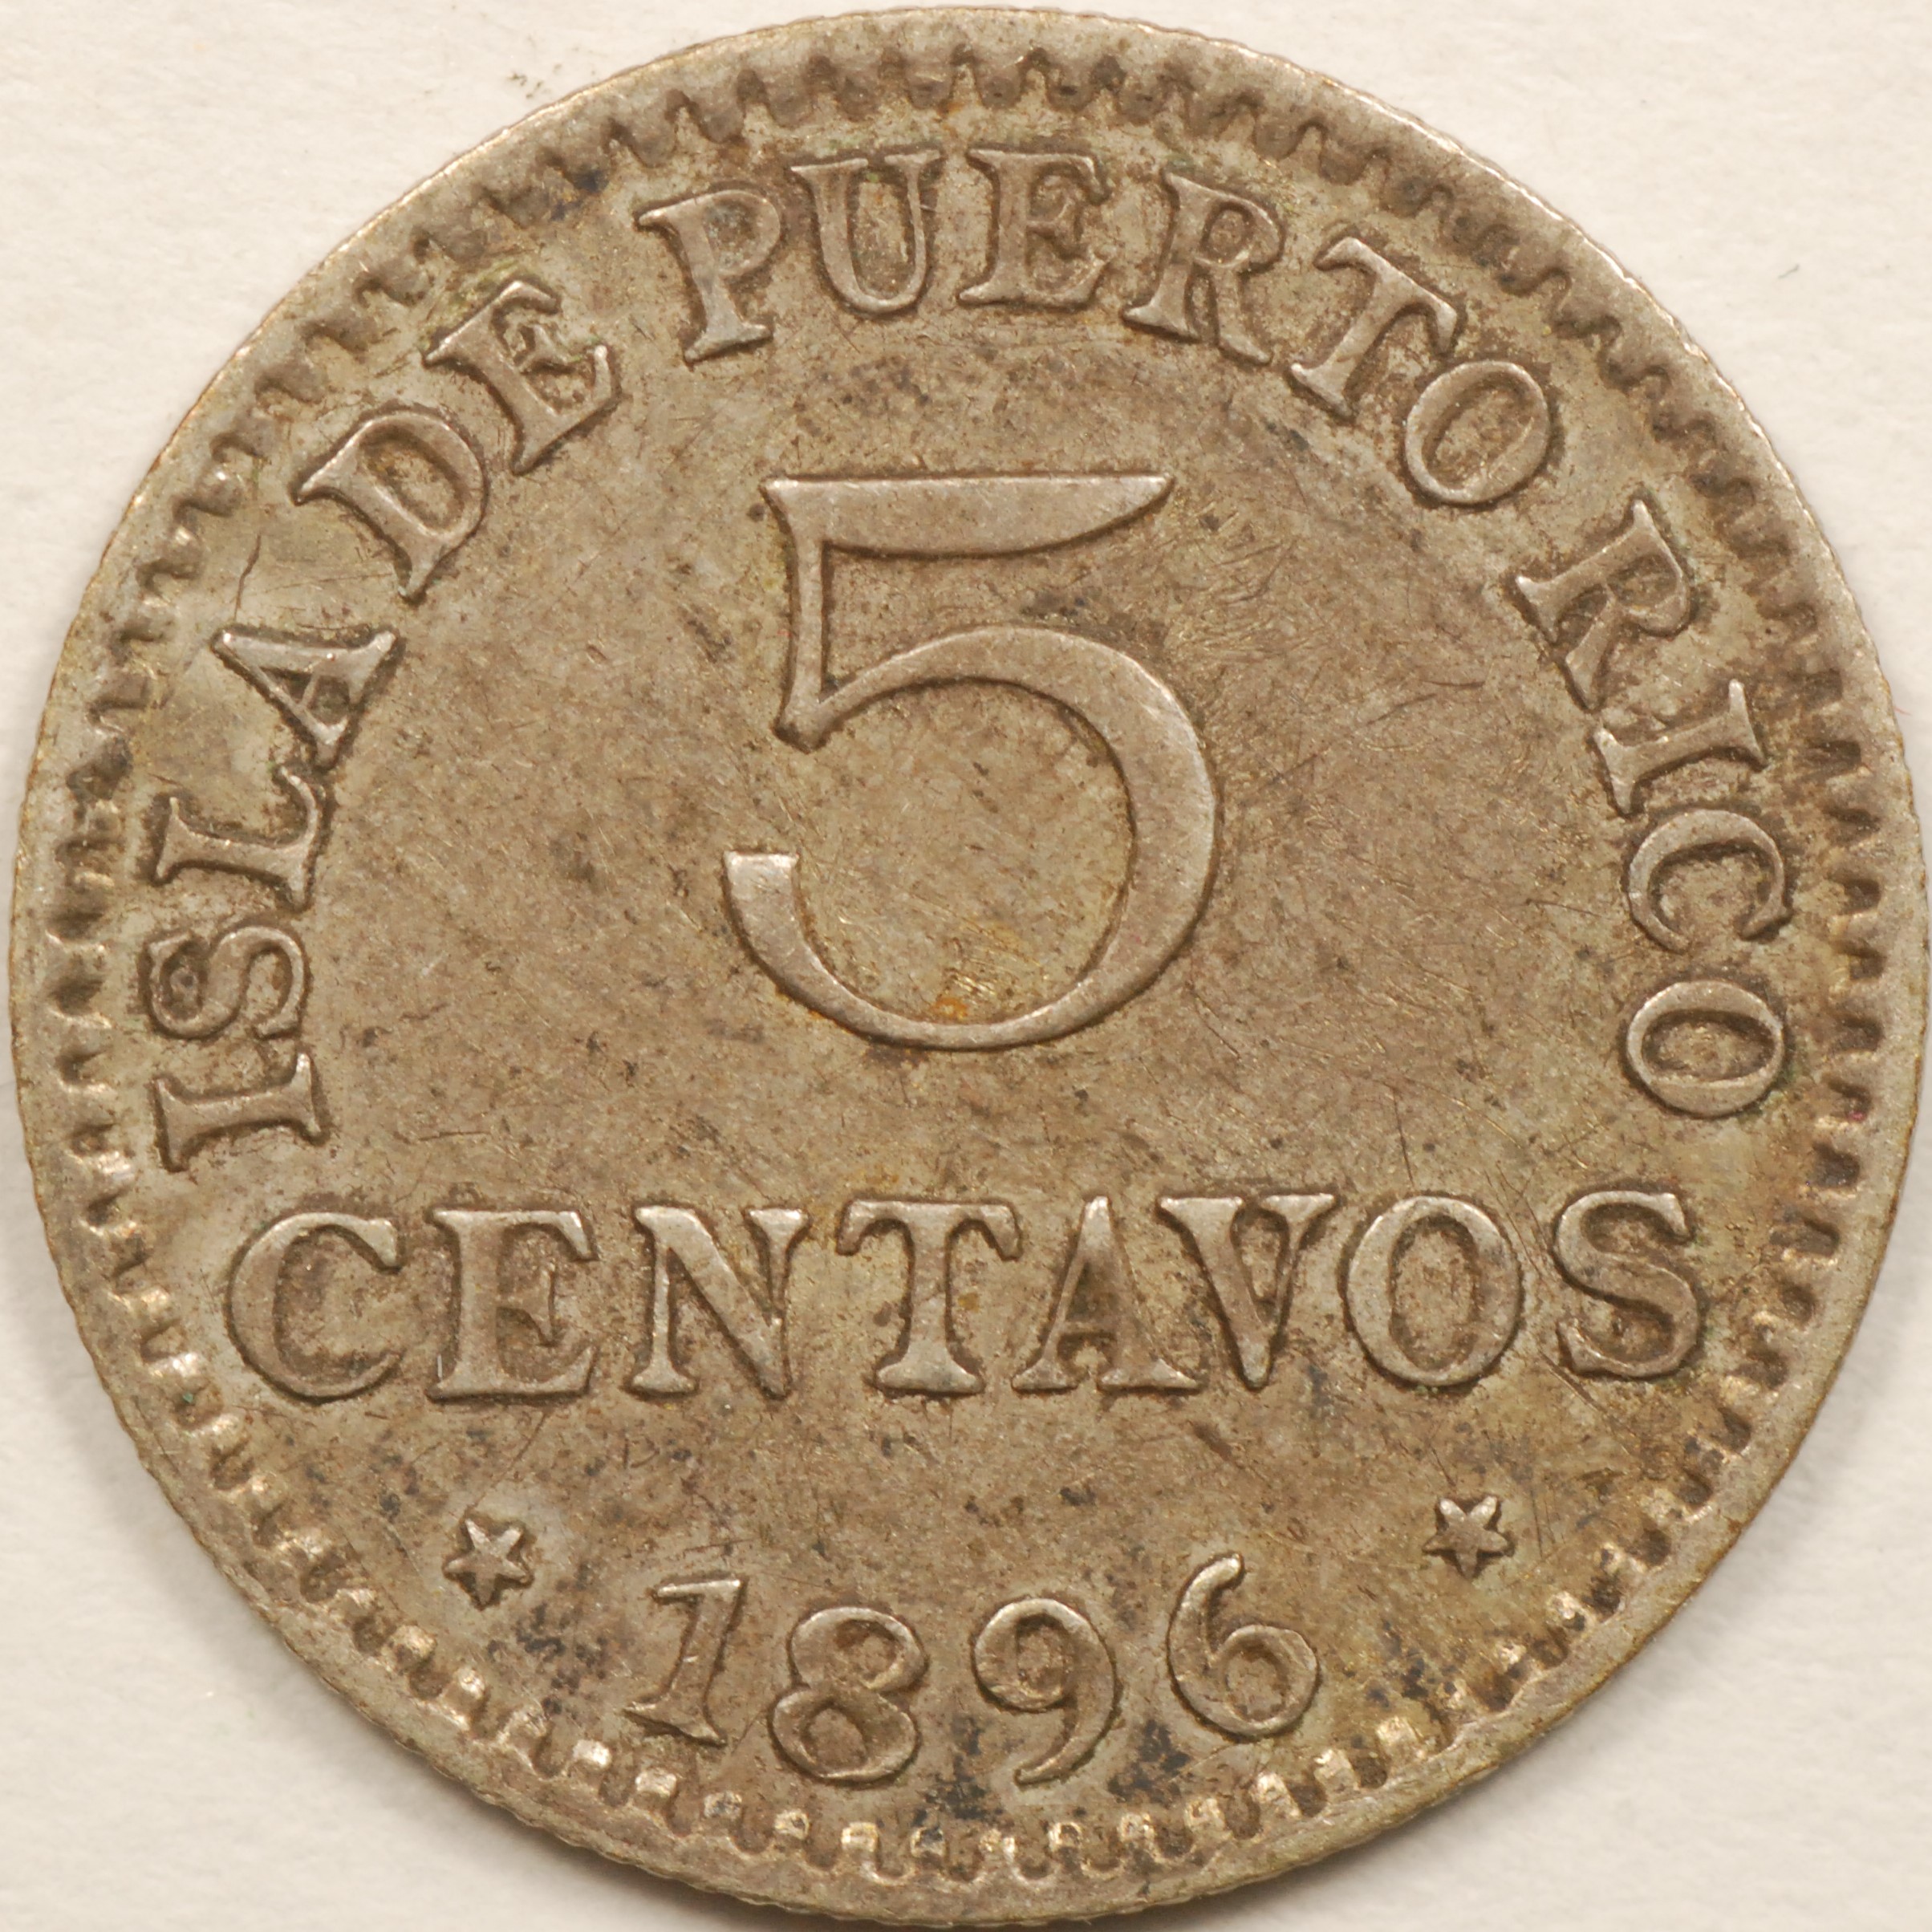 PUERTO RICO COINS